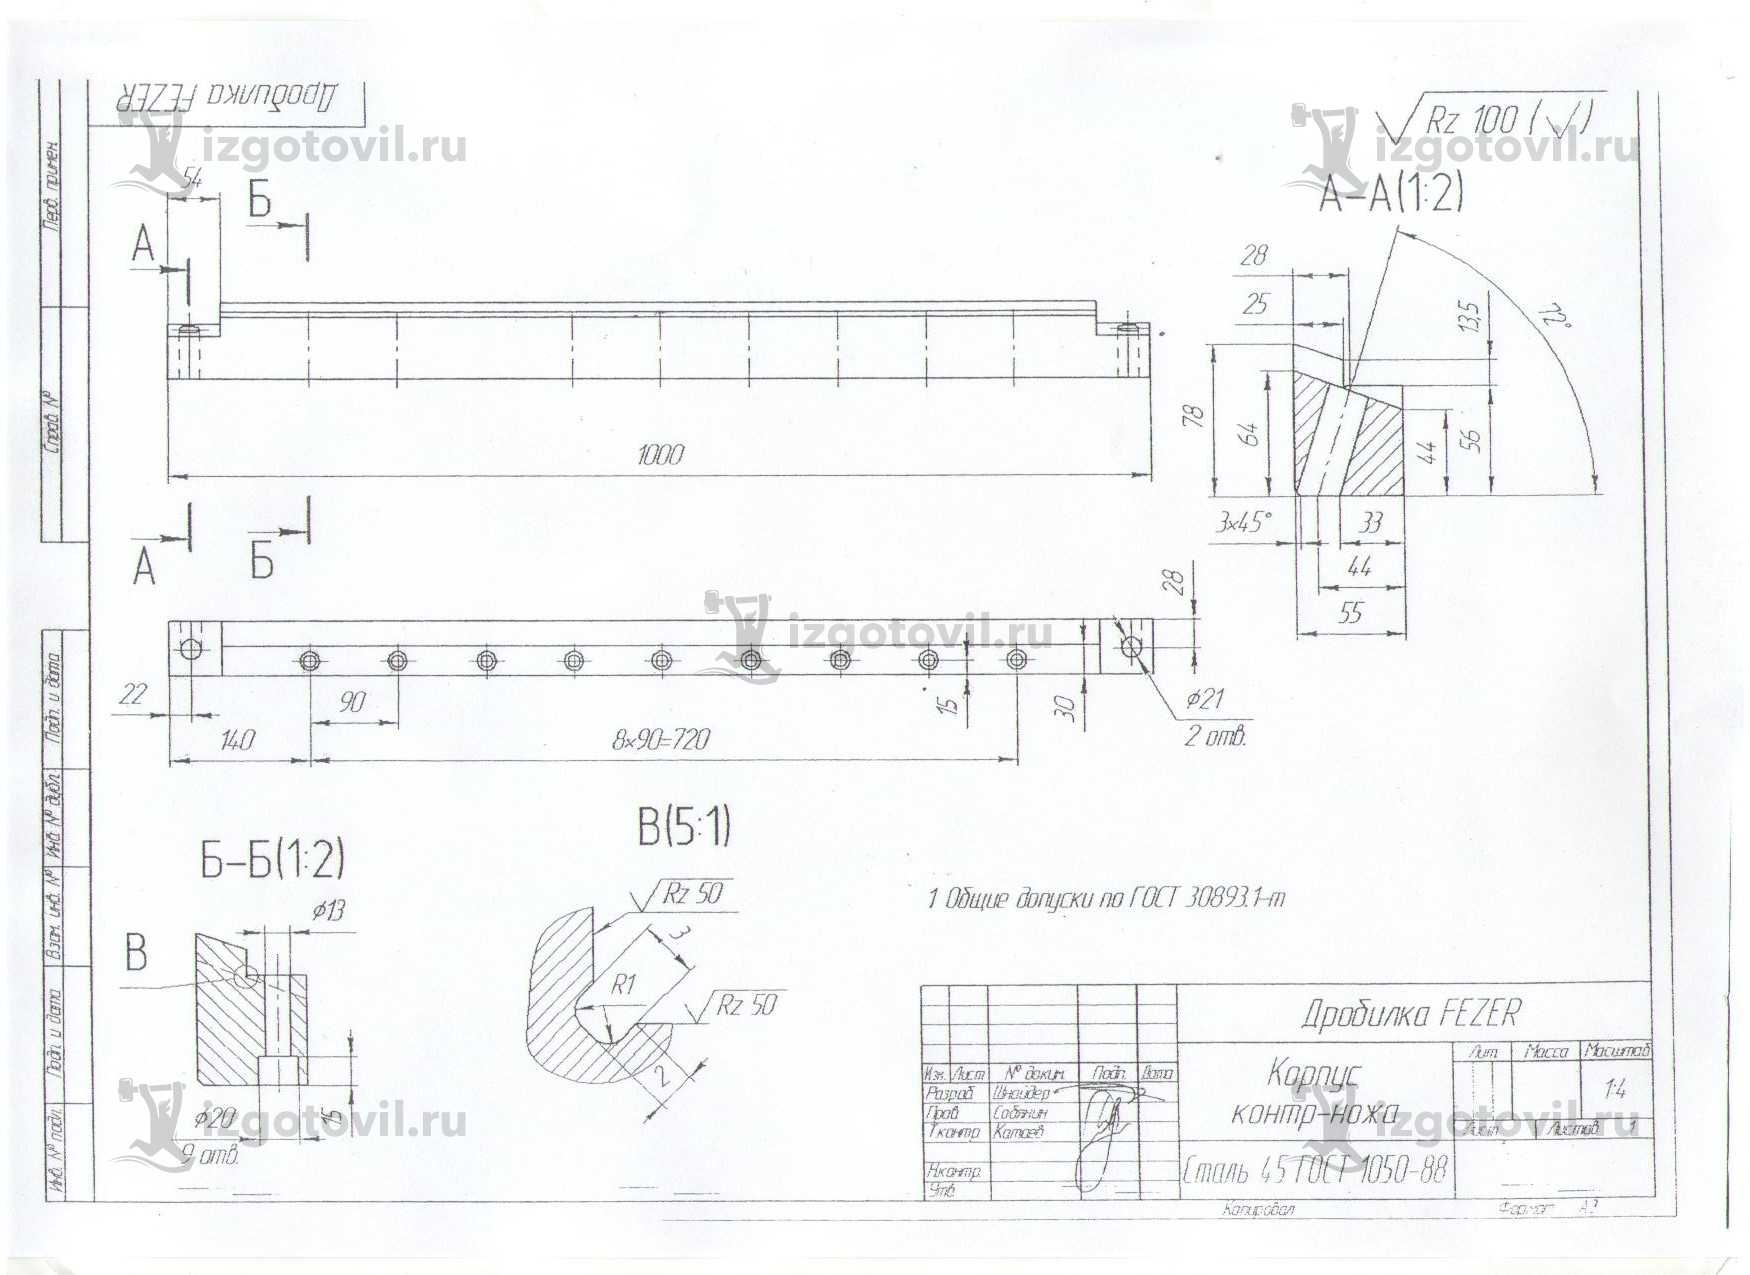 Изготовление деталей по чертежам: огражение дробилки, планка, корпус и ротор